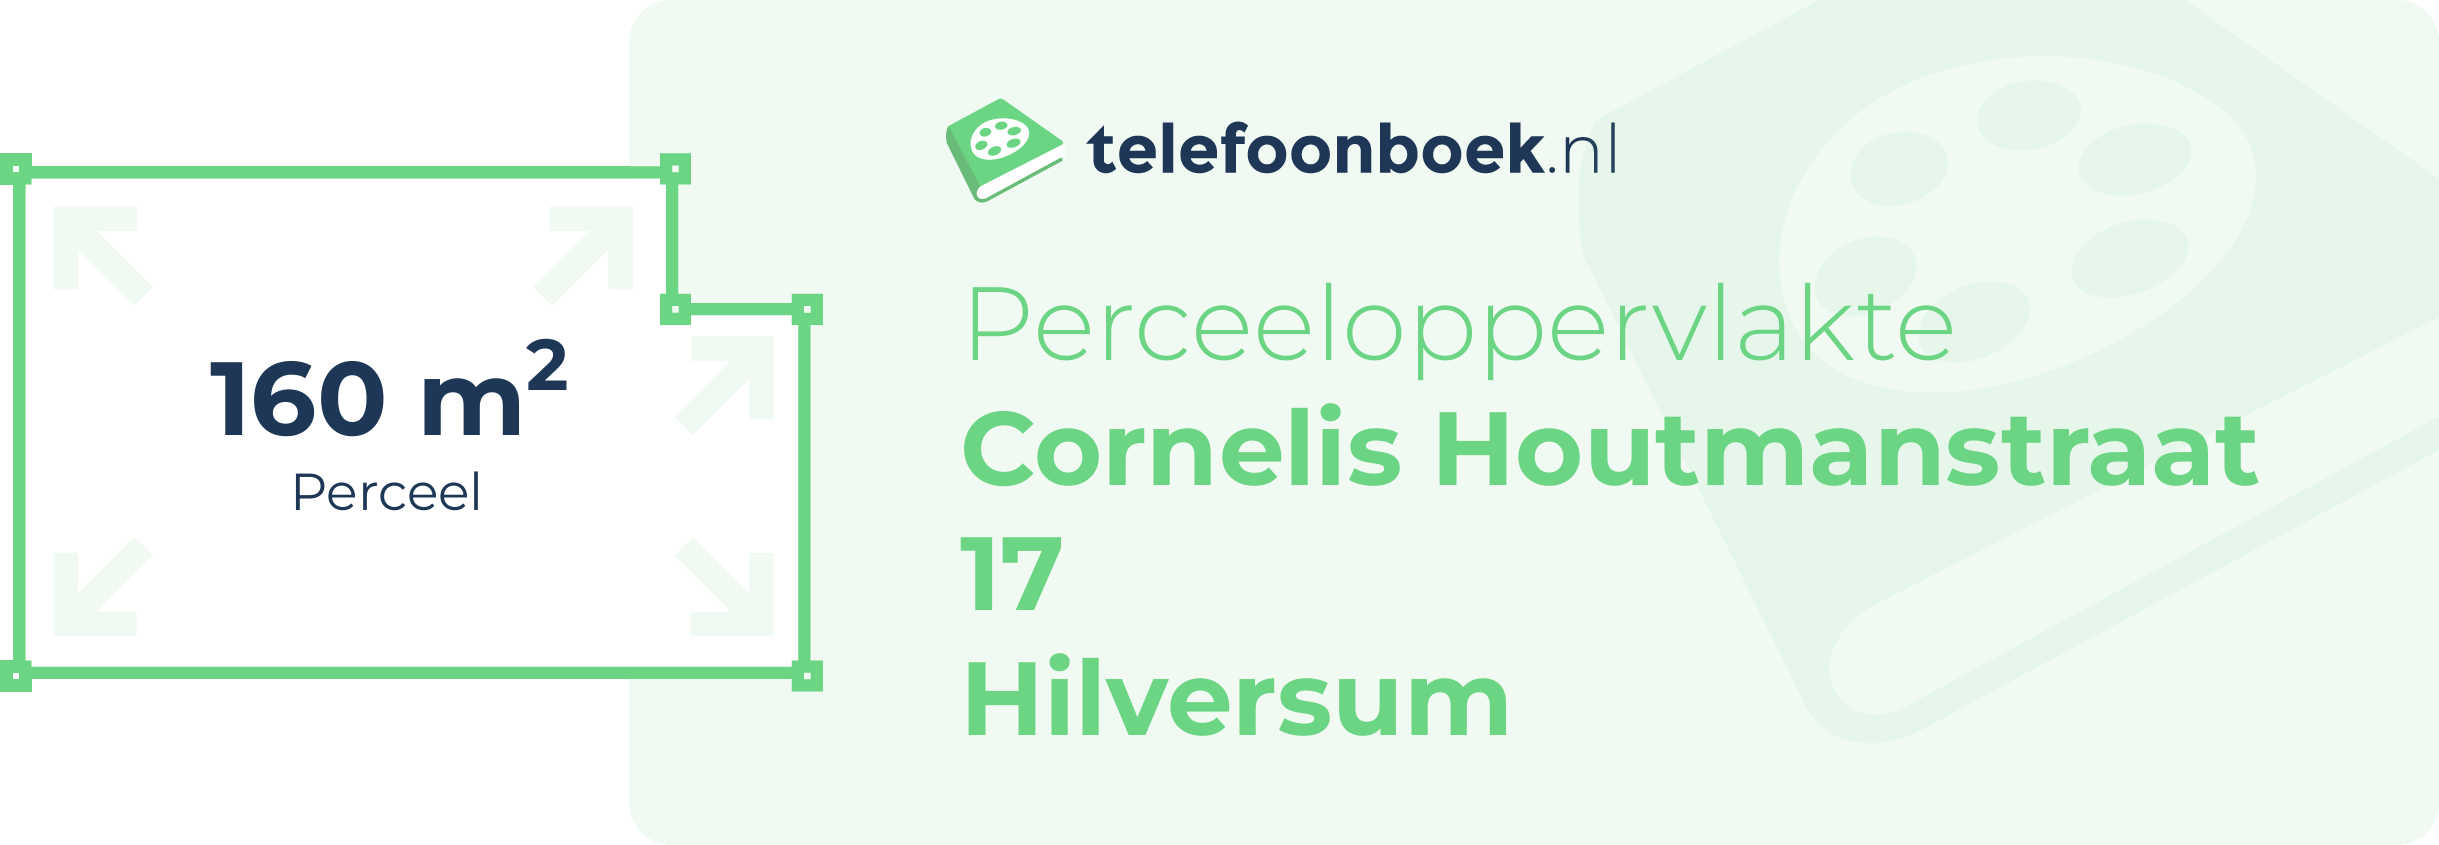 Perceeloppervlakte Cornelis Houtmanstraat 17 Hilversum